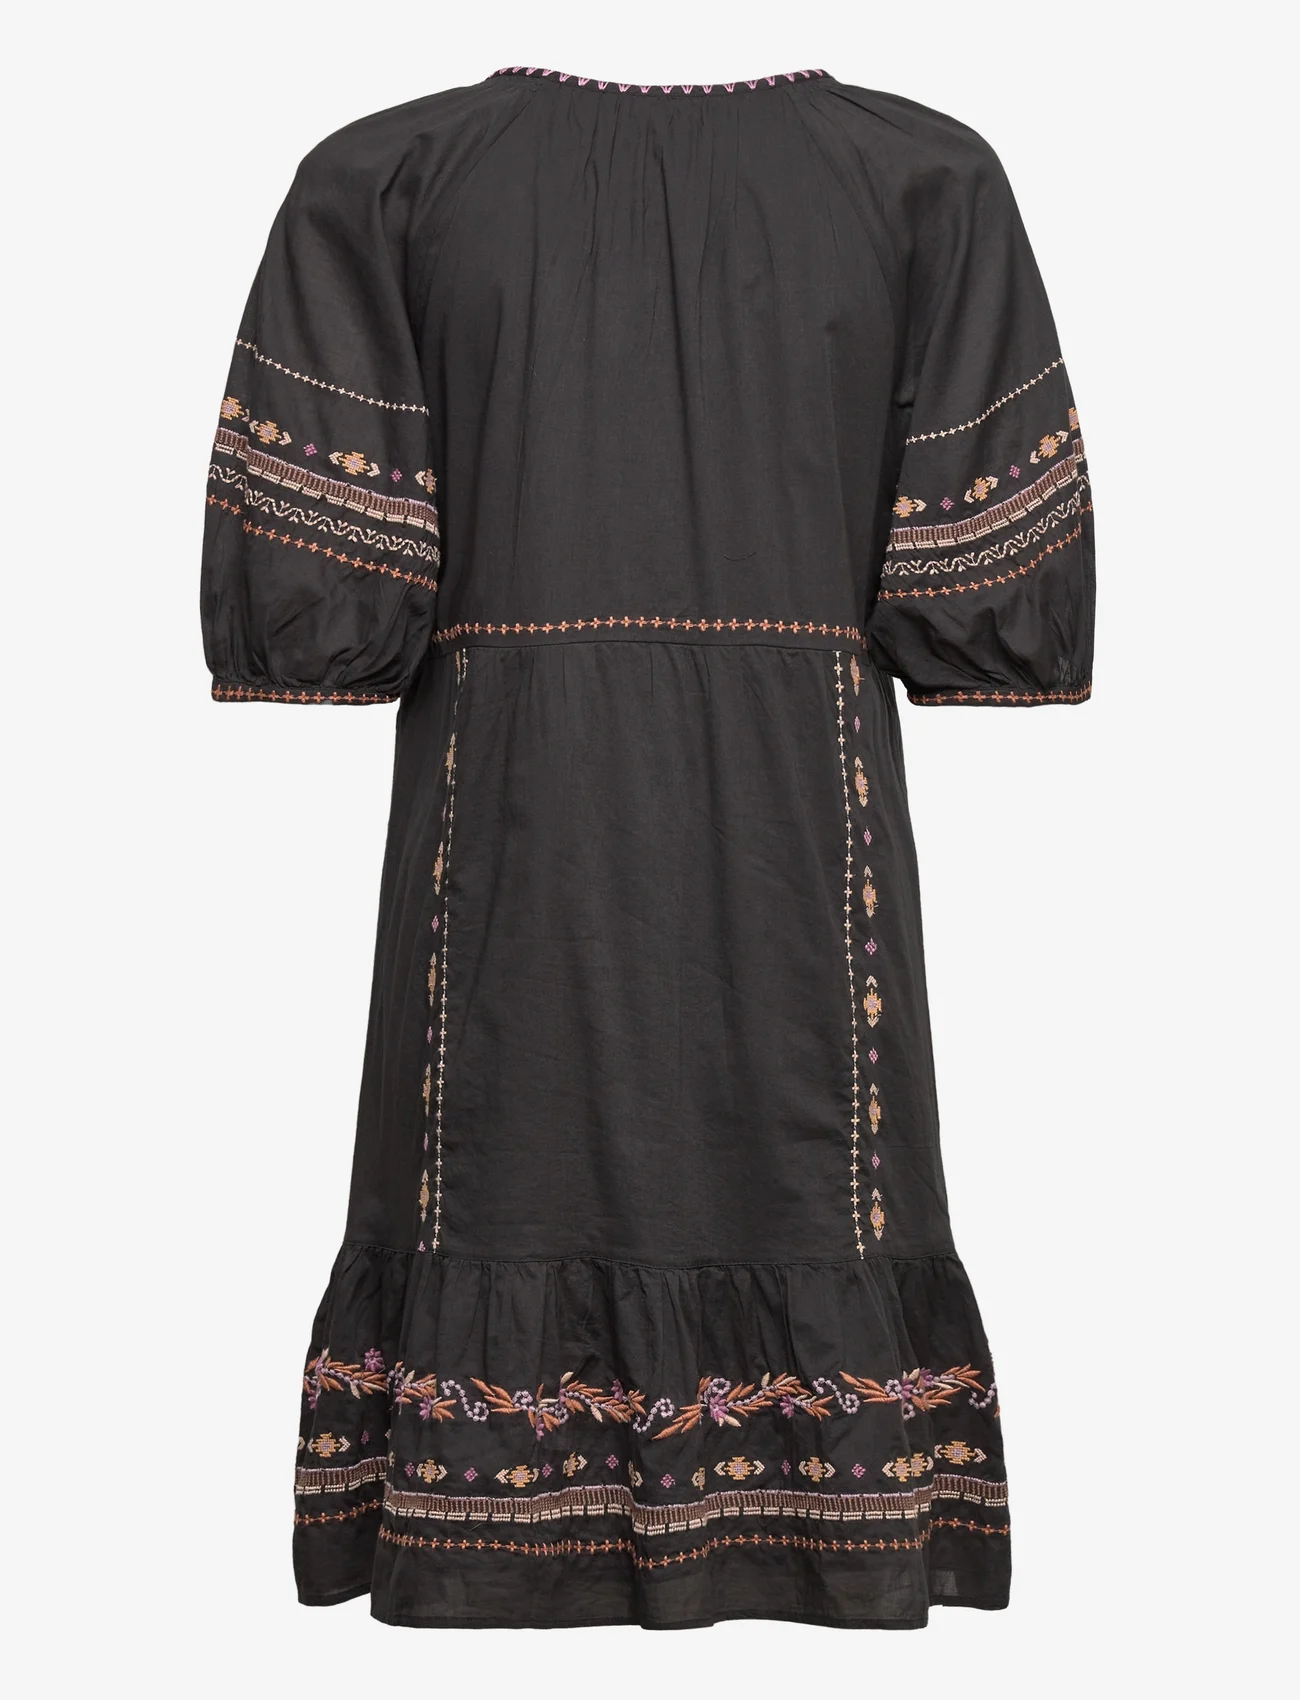 ODD MOLLY - Amira Short Dress - marškinių tipo suknelės - deep asphalt - 1